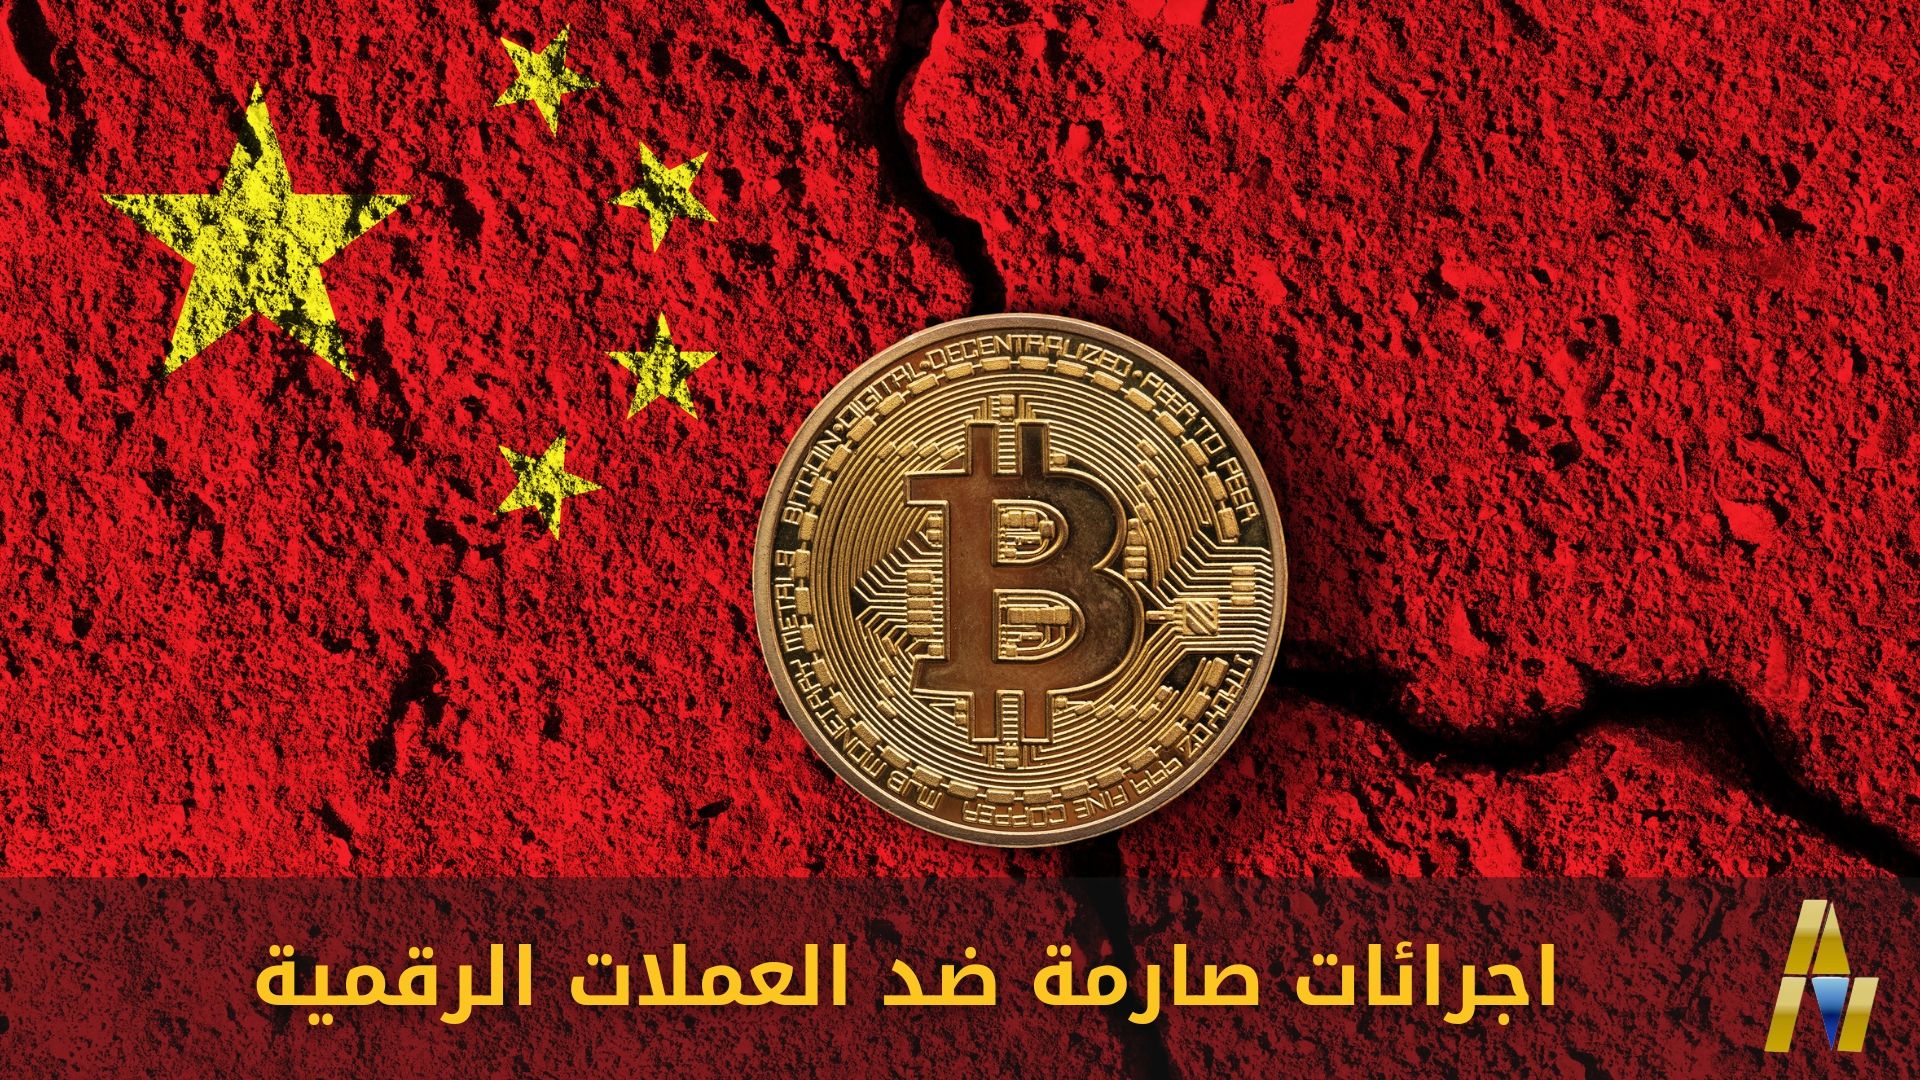 China and Bitcoin